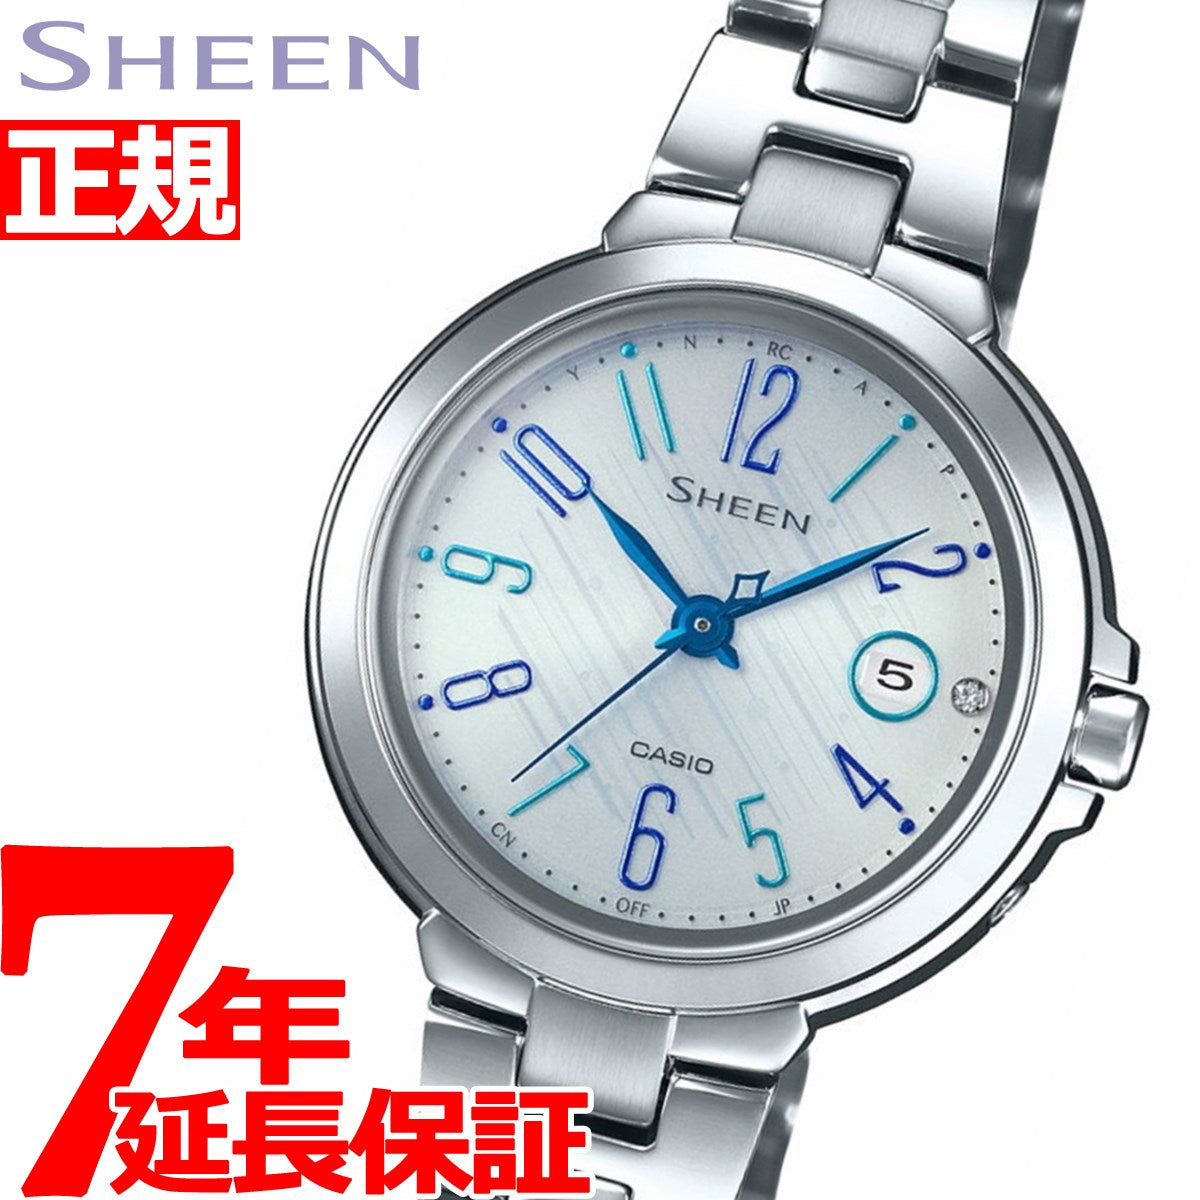 カシオ シーン CASIO SHEEN 電波 ソーラー 電波時計 腕時計 レディース